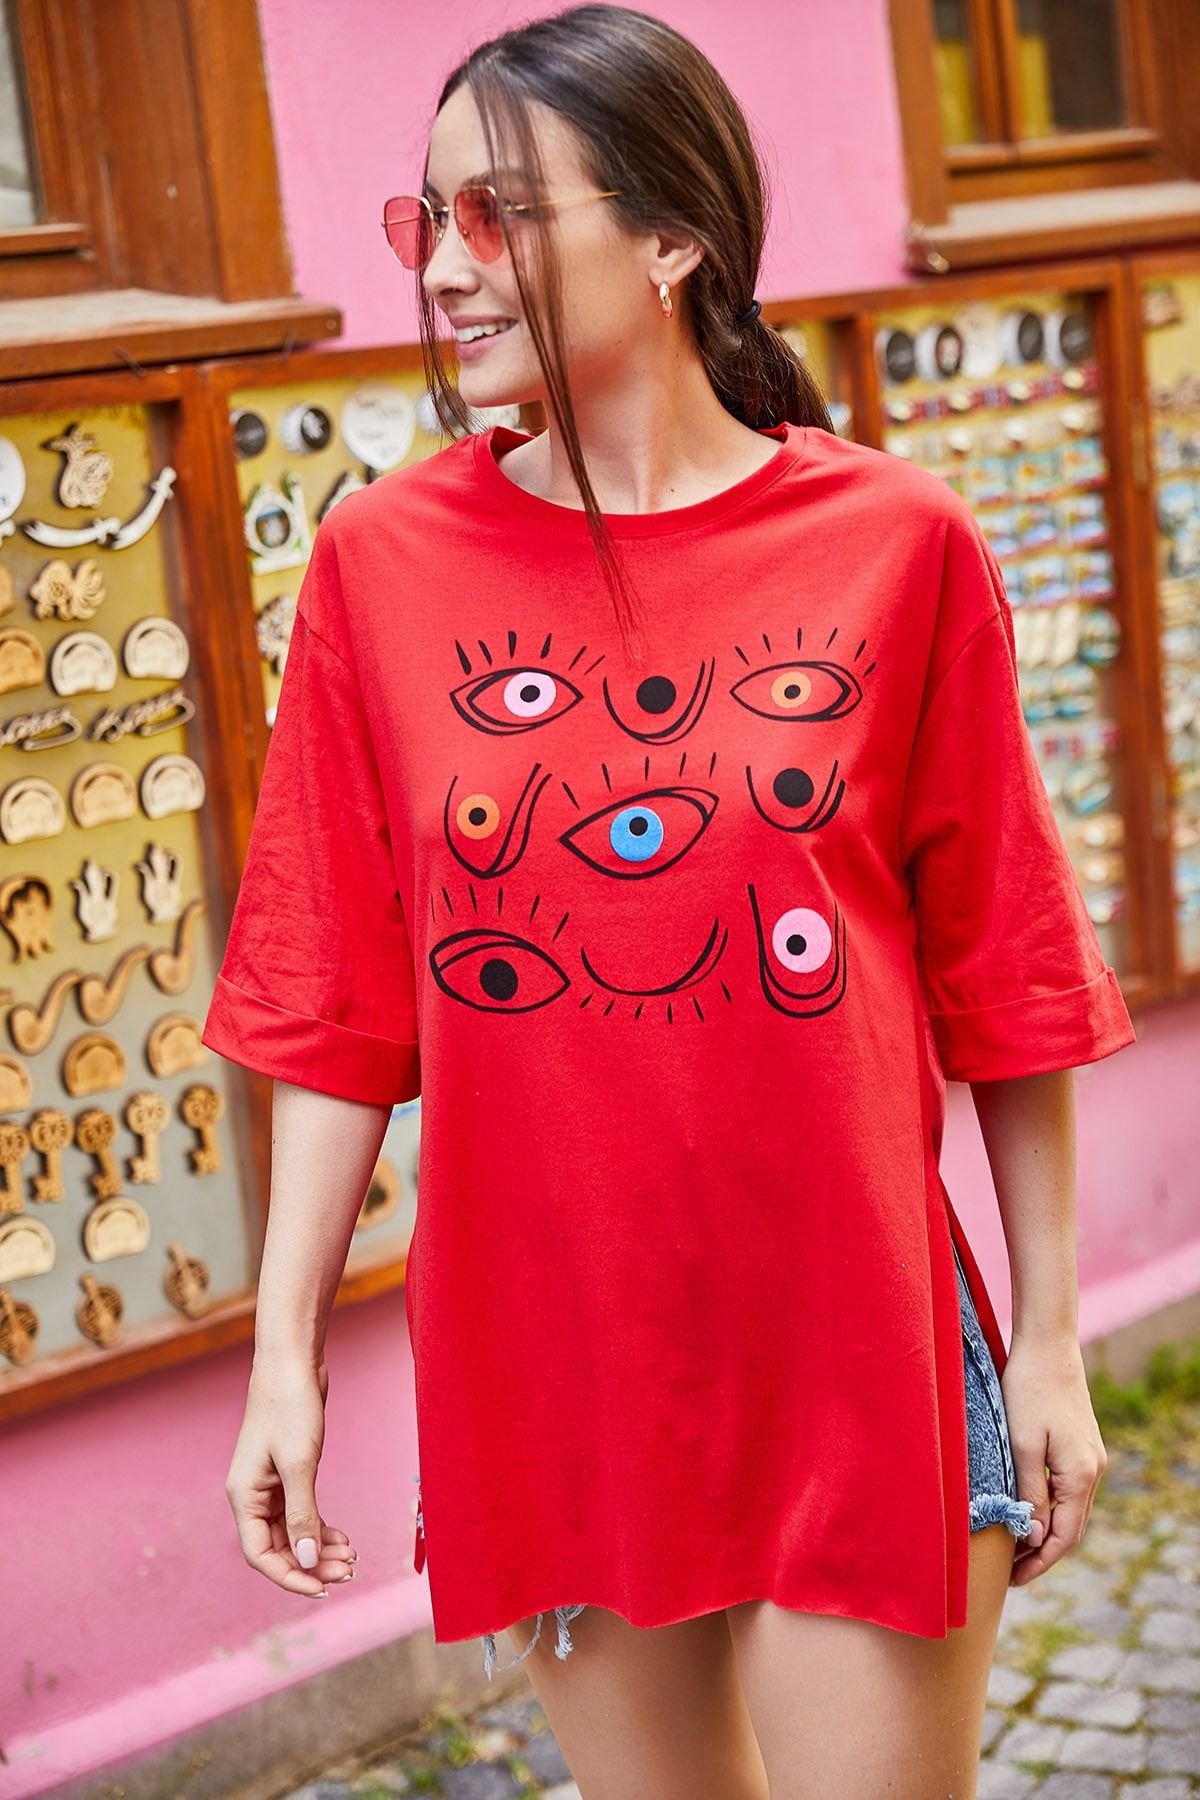 armonika Kadın Kırmızı Göz Baskılı Yuvarlak Yaka Yanı Yırtmaçlı T-Shirt ARM-21K012025